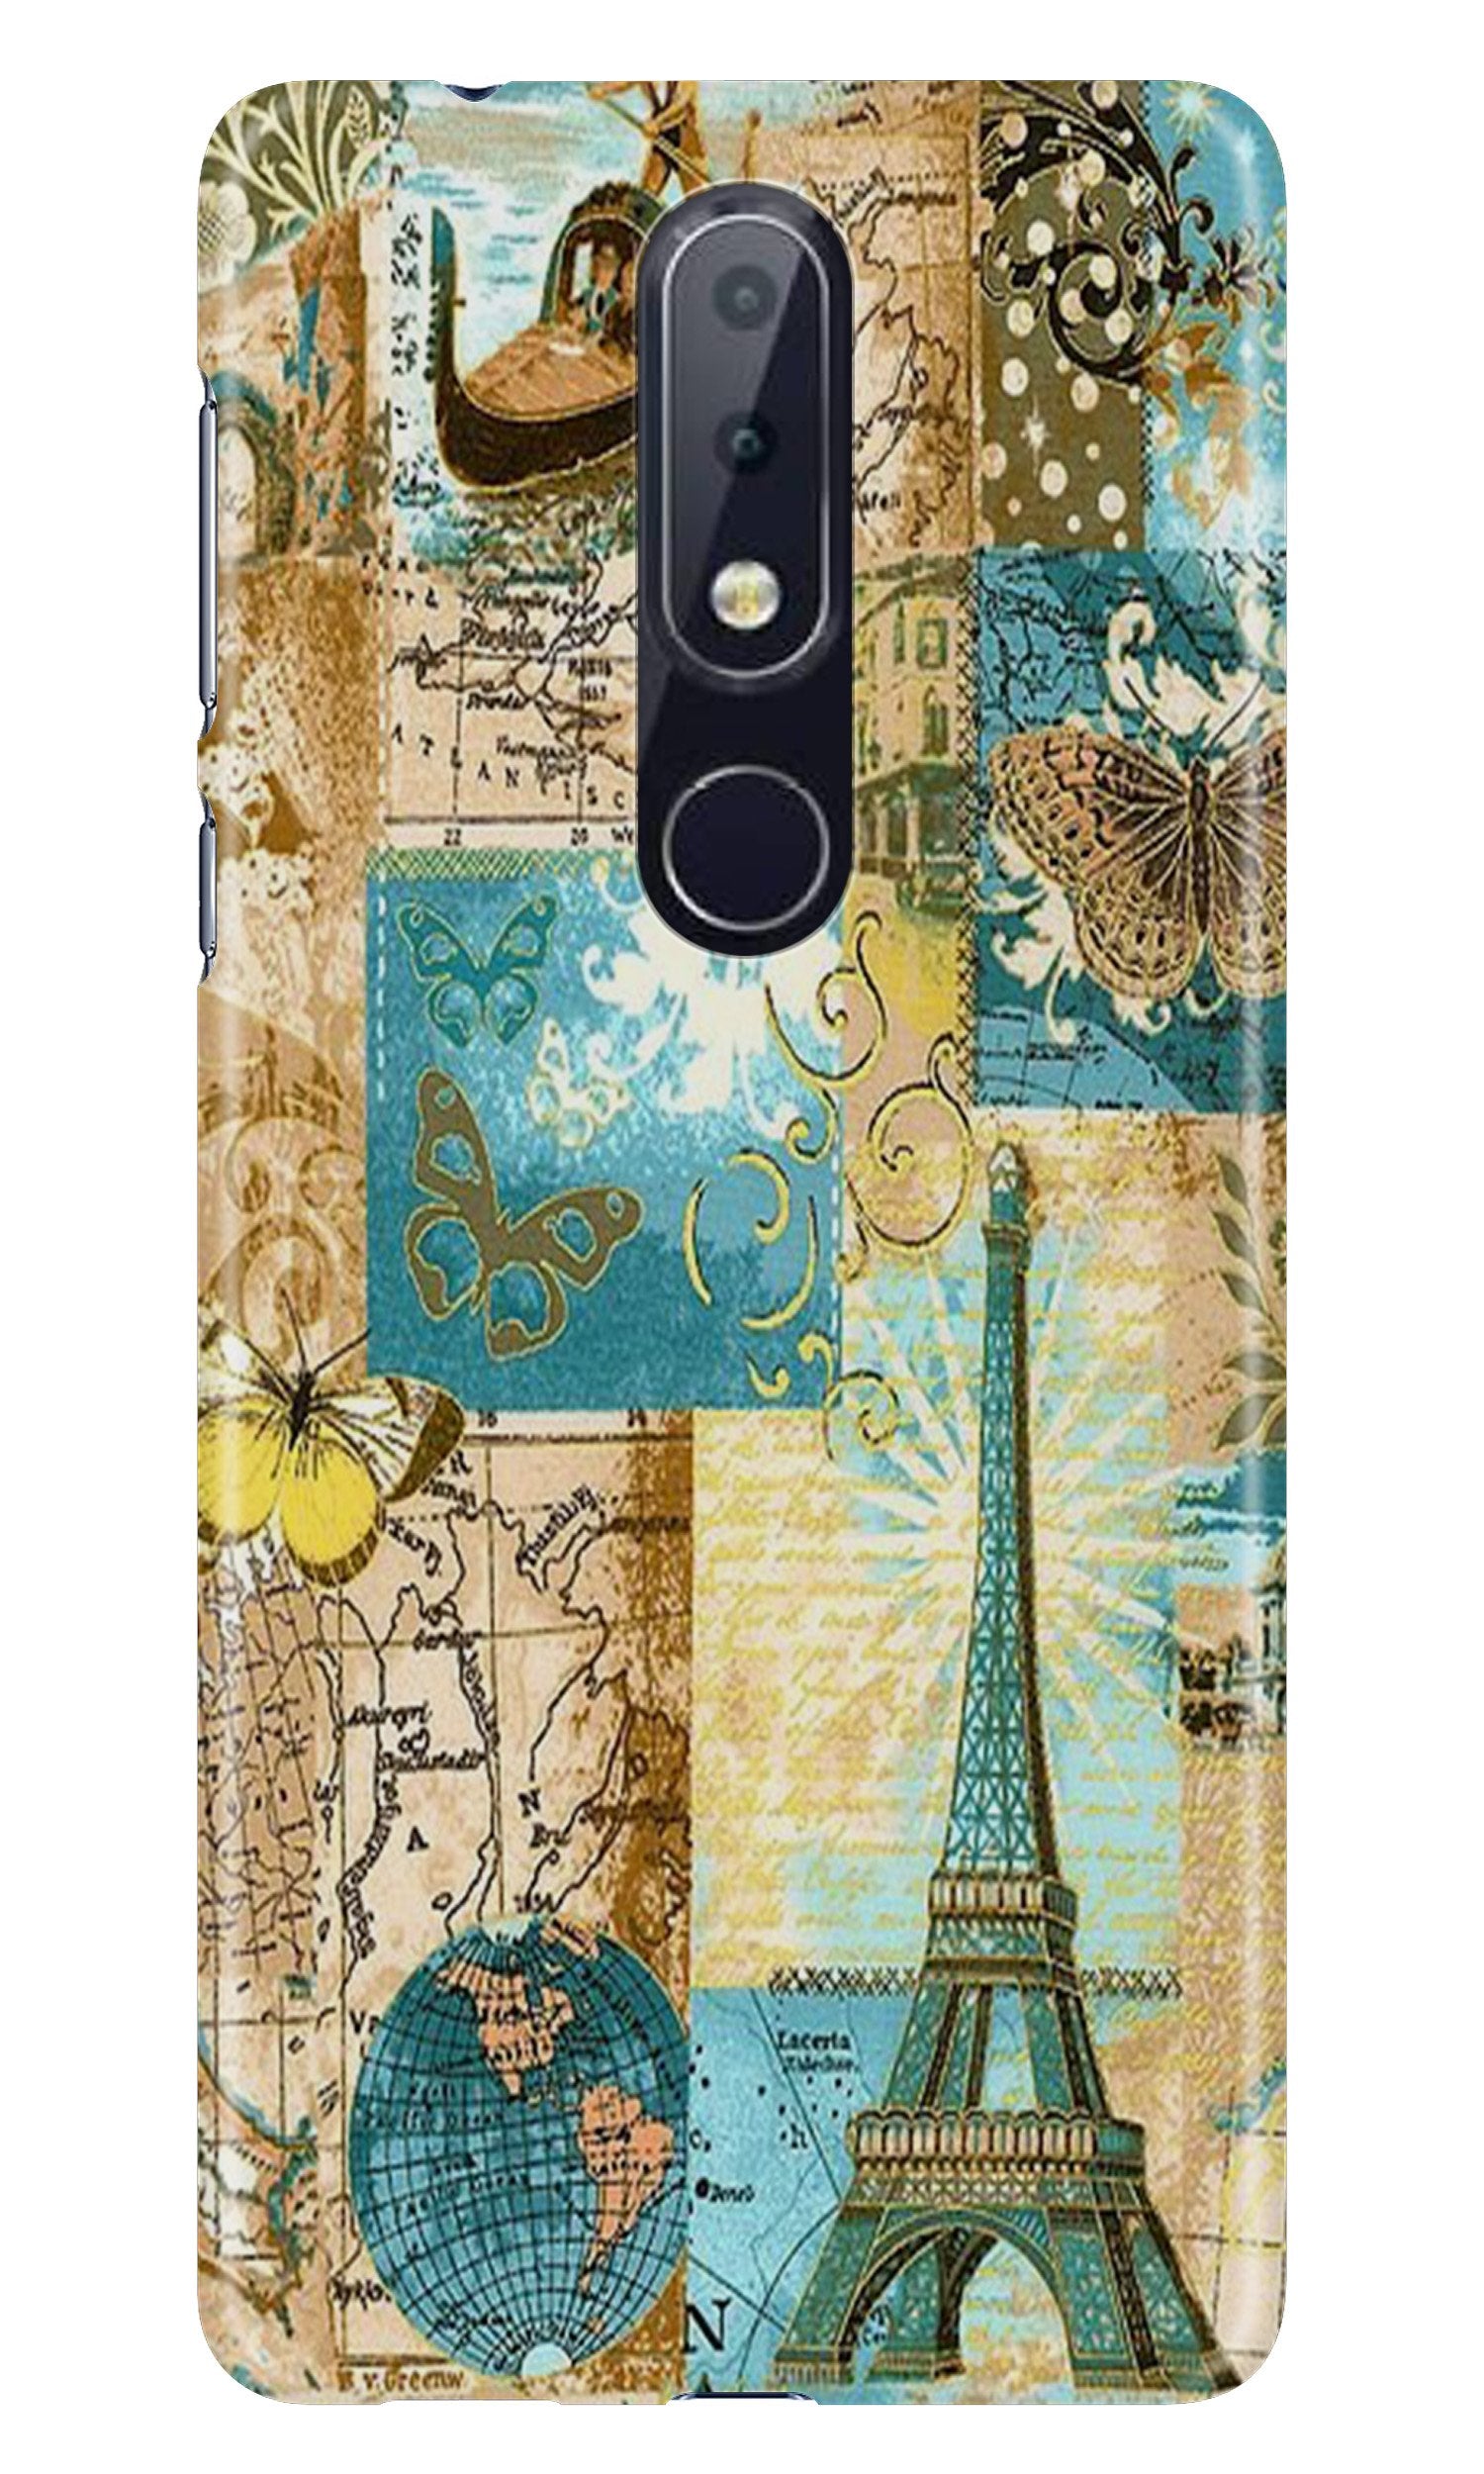 Travel Eiffel TowerCase for Nokia 4.2 (Design No. 206)